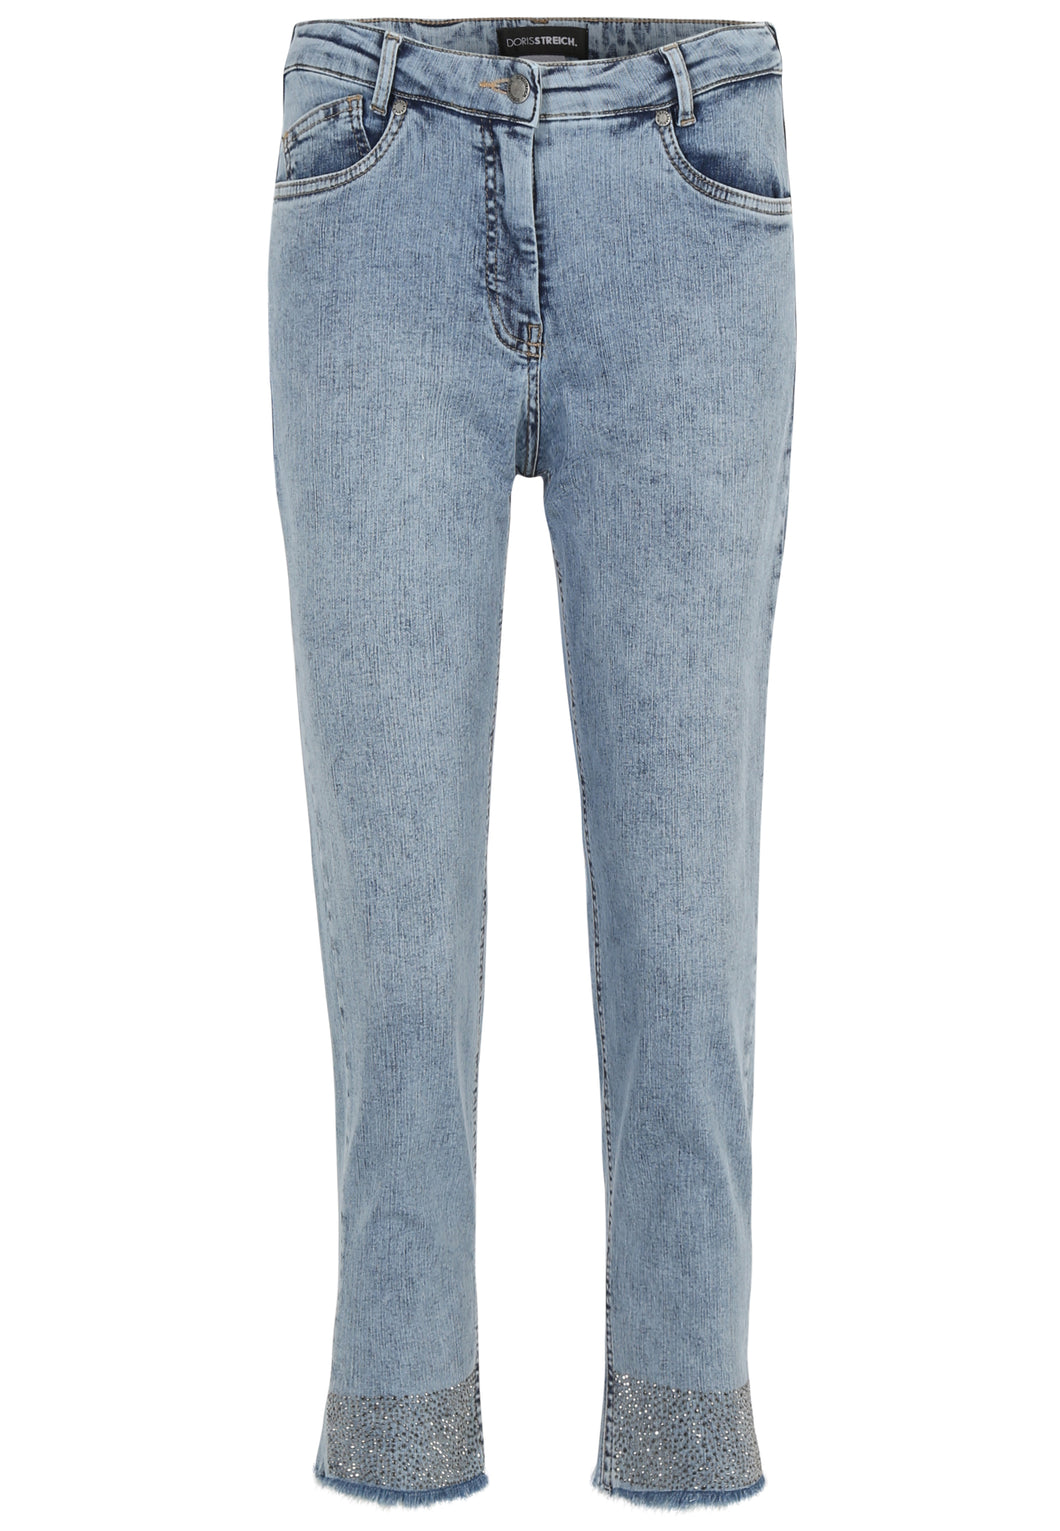 Doris Streich 5-Pocket Jeans Hose mit Strass-Steinchen Gr. 44 - 52